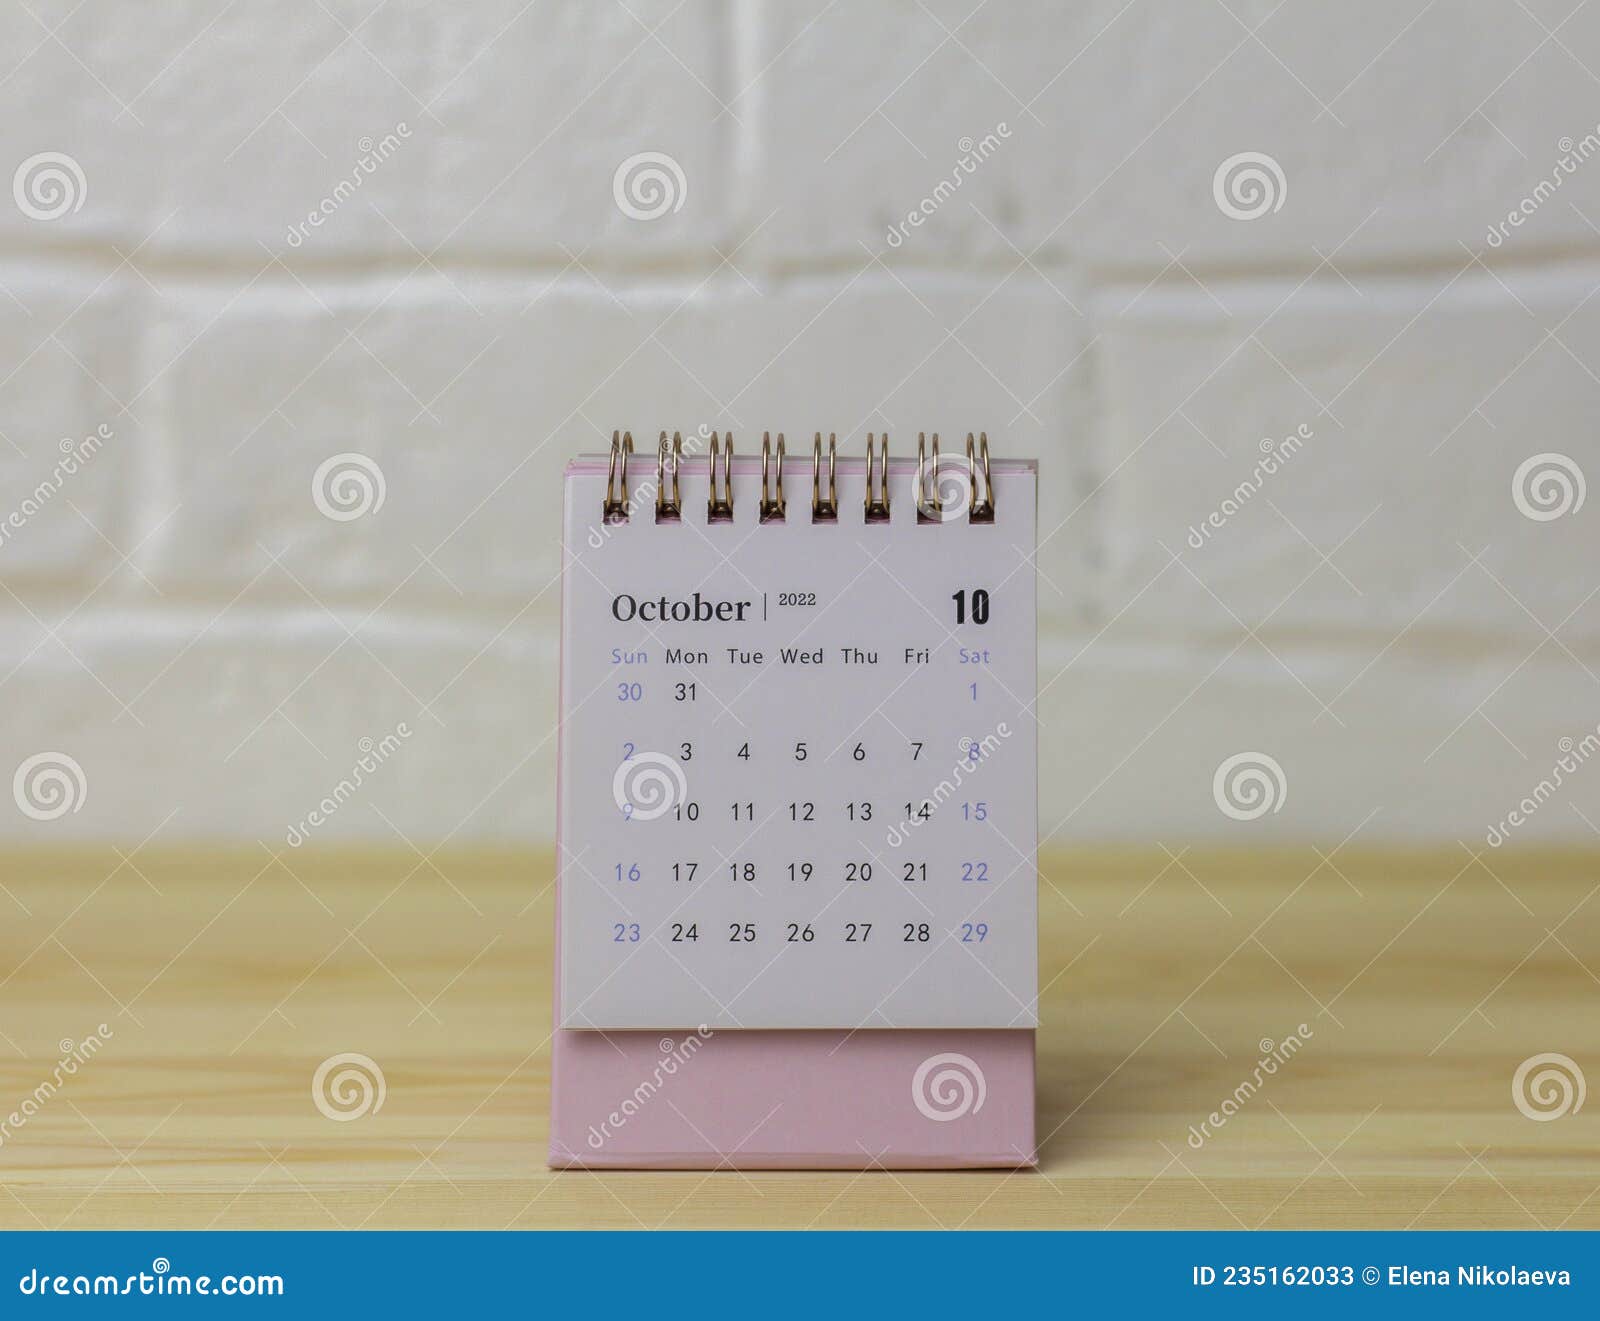 October 2022 Desktop Calendar Desktop Calendar For October 2022.Calendar For Planning For The Month Stock  Image - Image Of Office, Appointment: 235162033